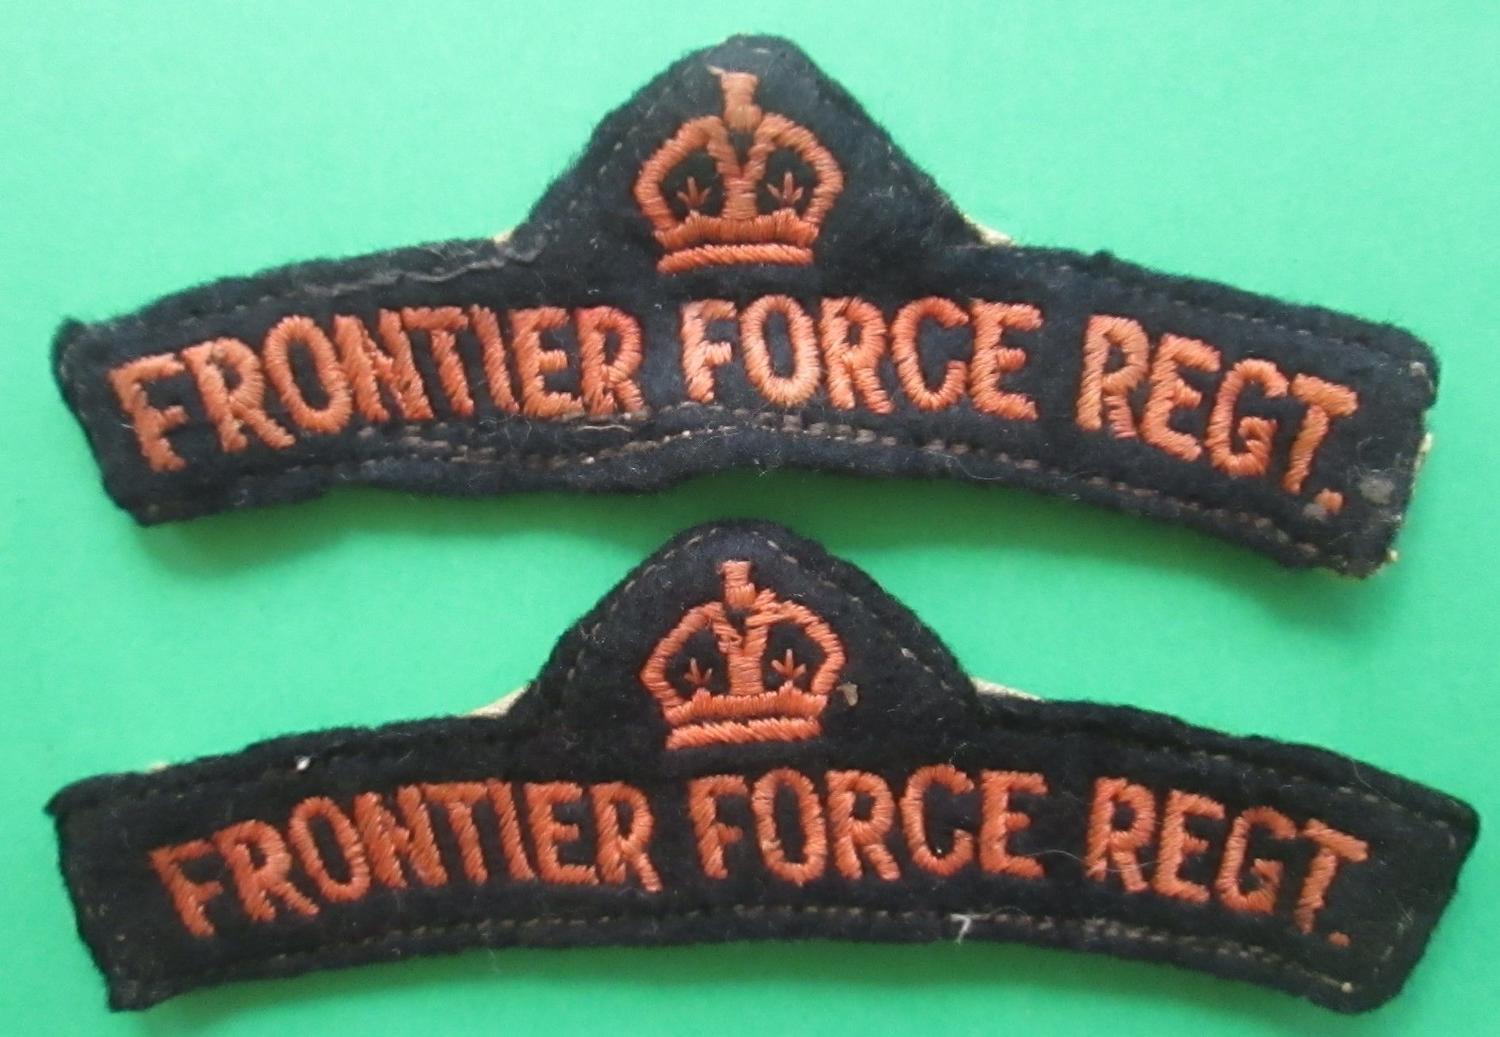 FRONTIER FORCE REGT SHOULDER TITLES